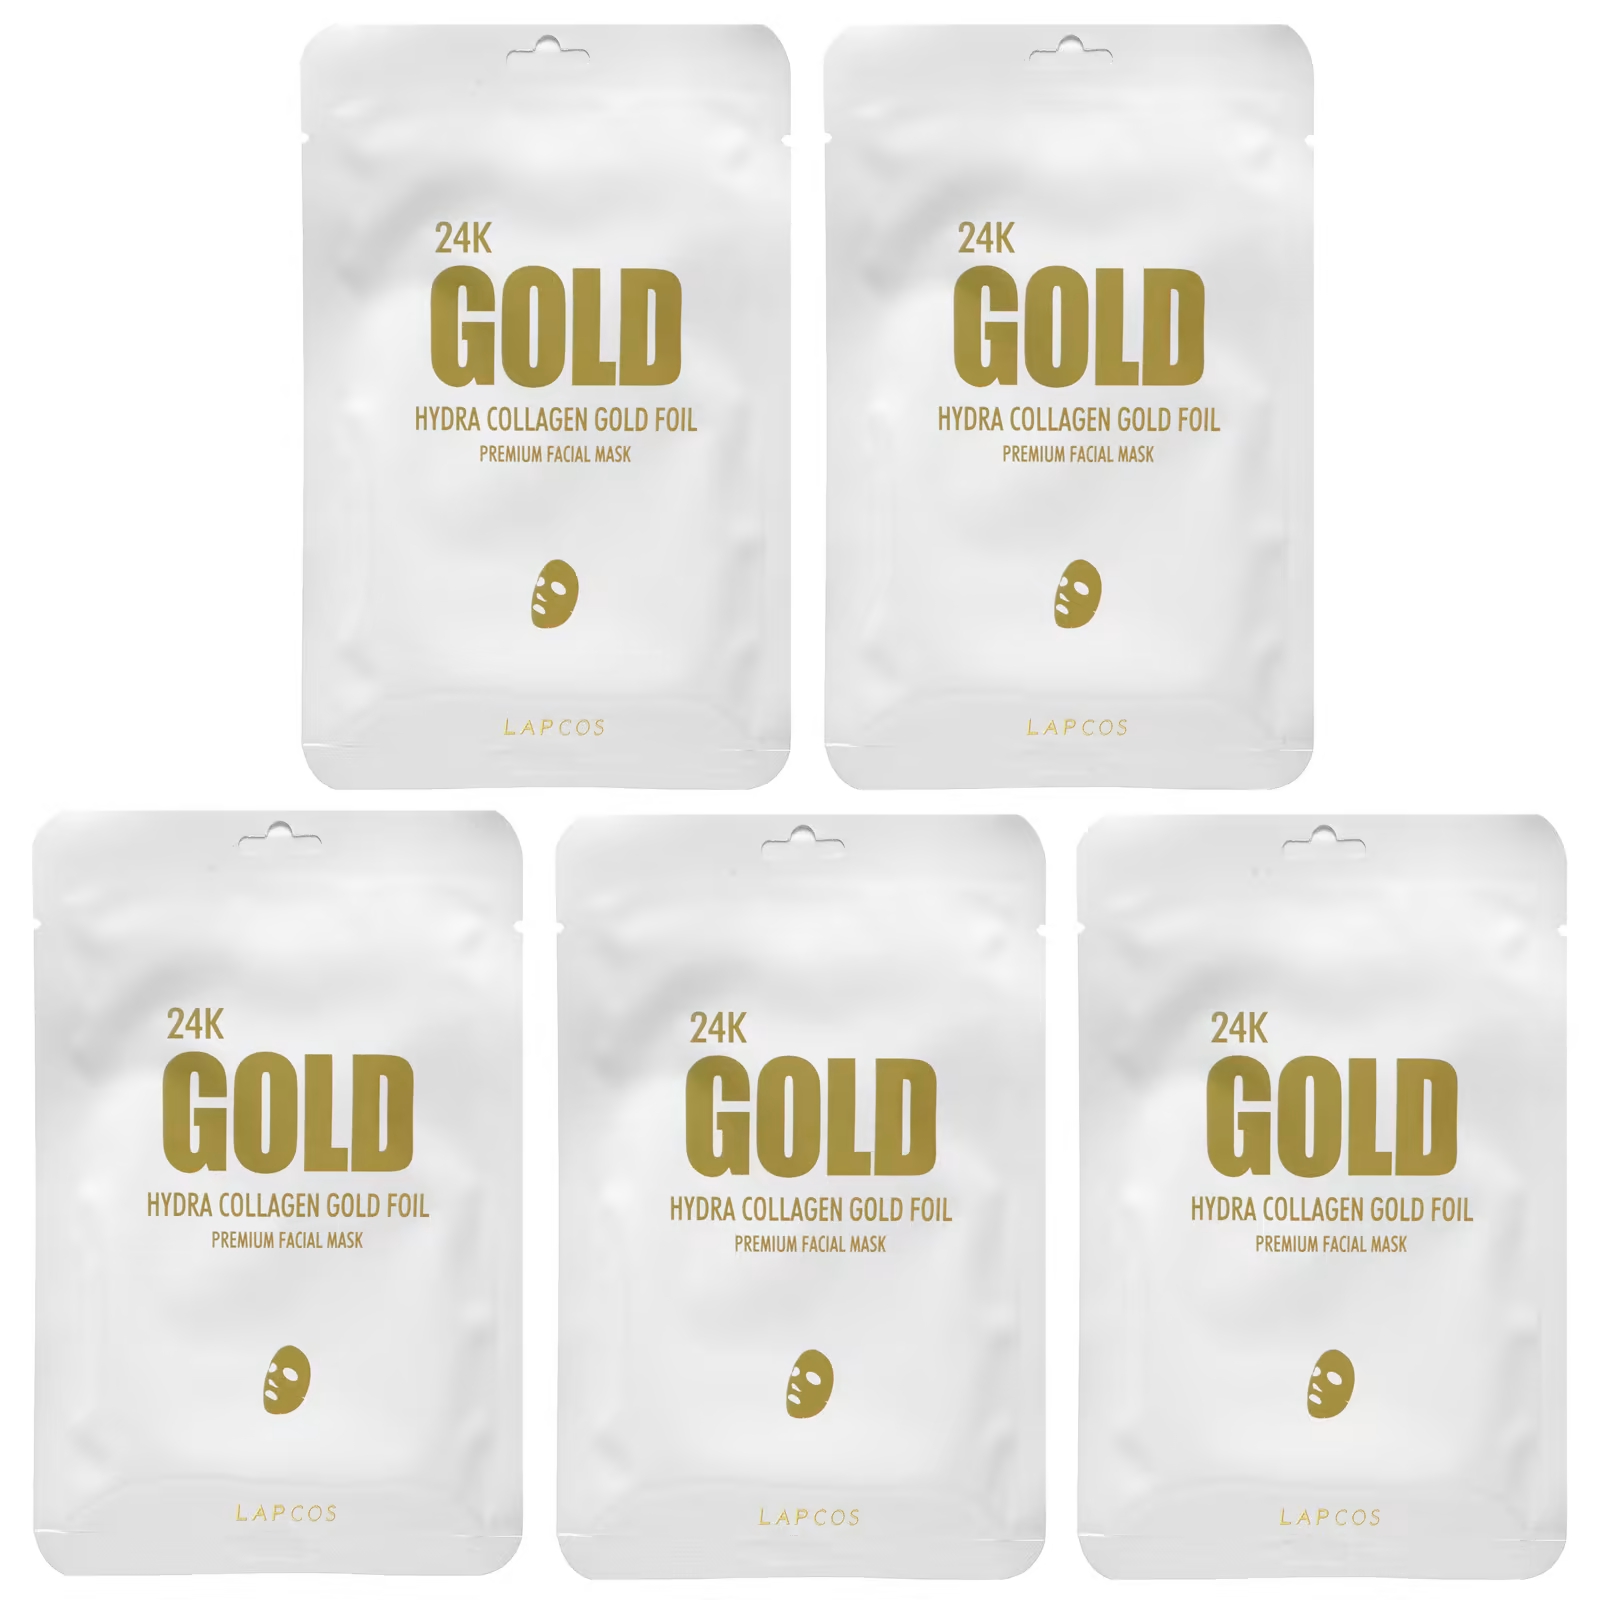 Lapcos 24K Gold Hydra Collagen Gold Foil косметическая маска для лица премиального качества 5 шт. 25 г (0,88 унции)